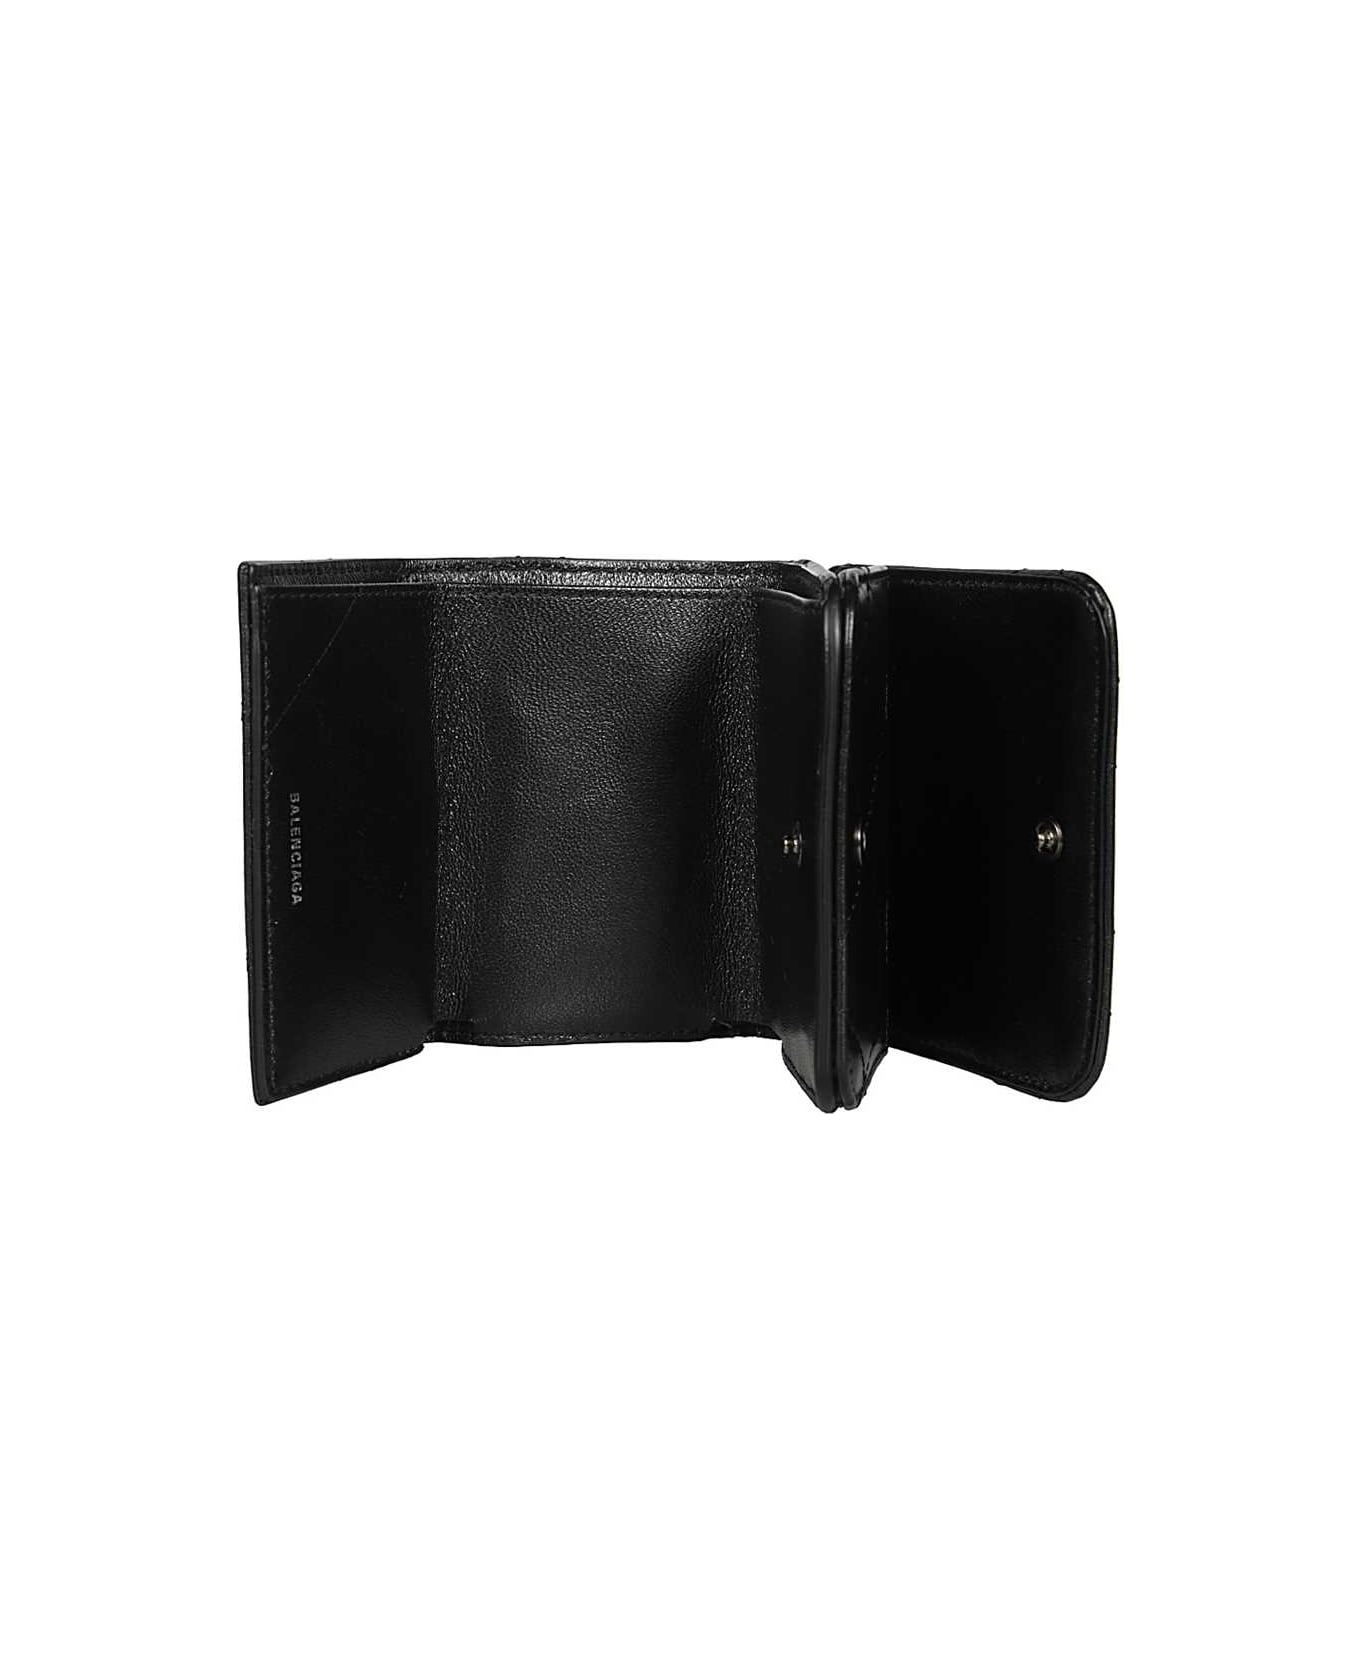 Balenciaga Leather Wallet - black